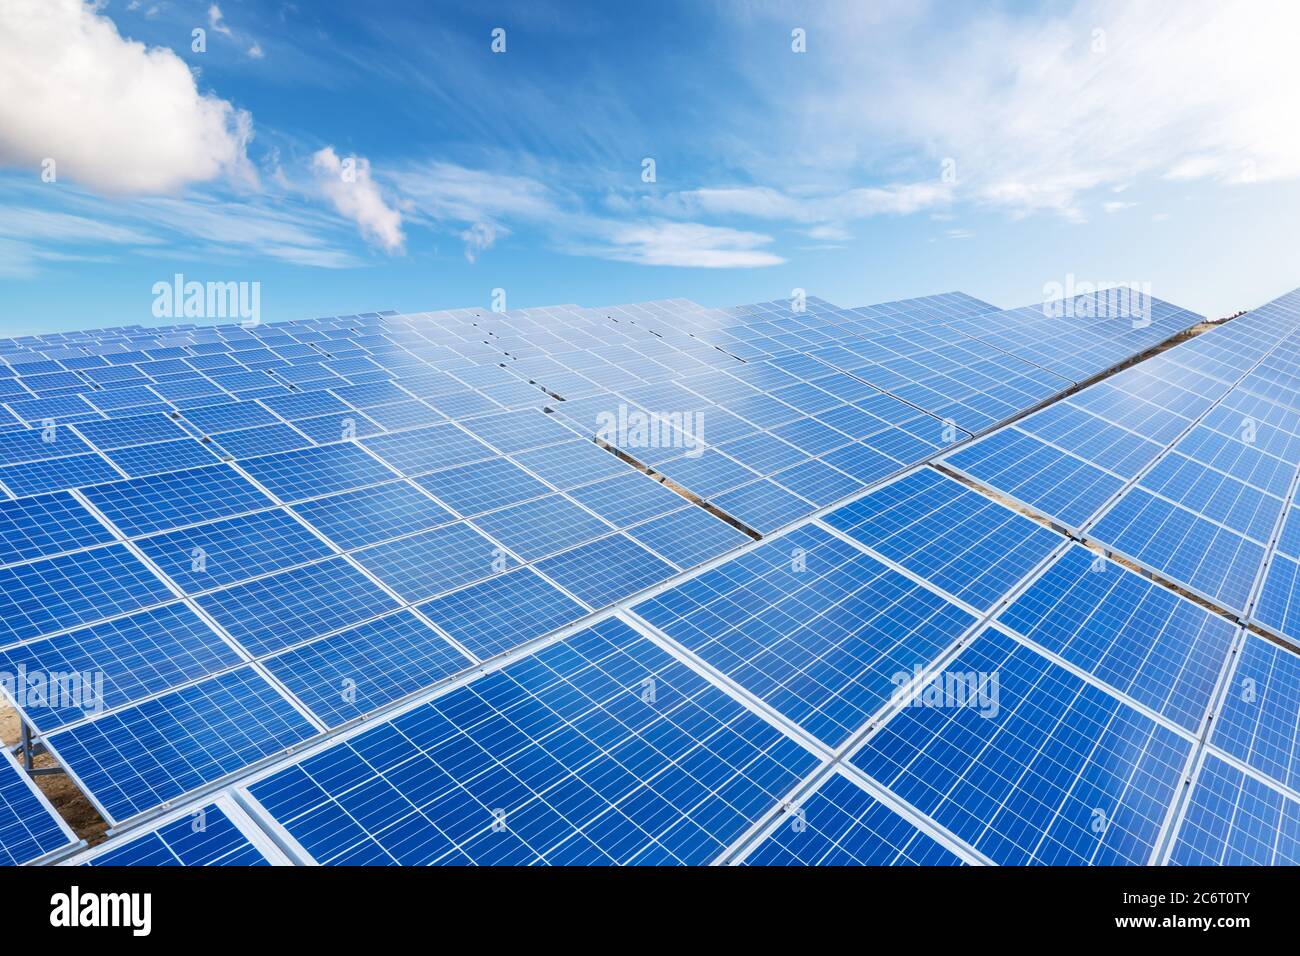 Vue rapprochée en haut des panneaux d'énergie solaire avec ciel bleu et fond de coudés. Concept d'énergie propre et renouvelable pour un écosystème durable Banque D'Images